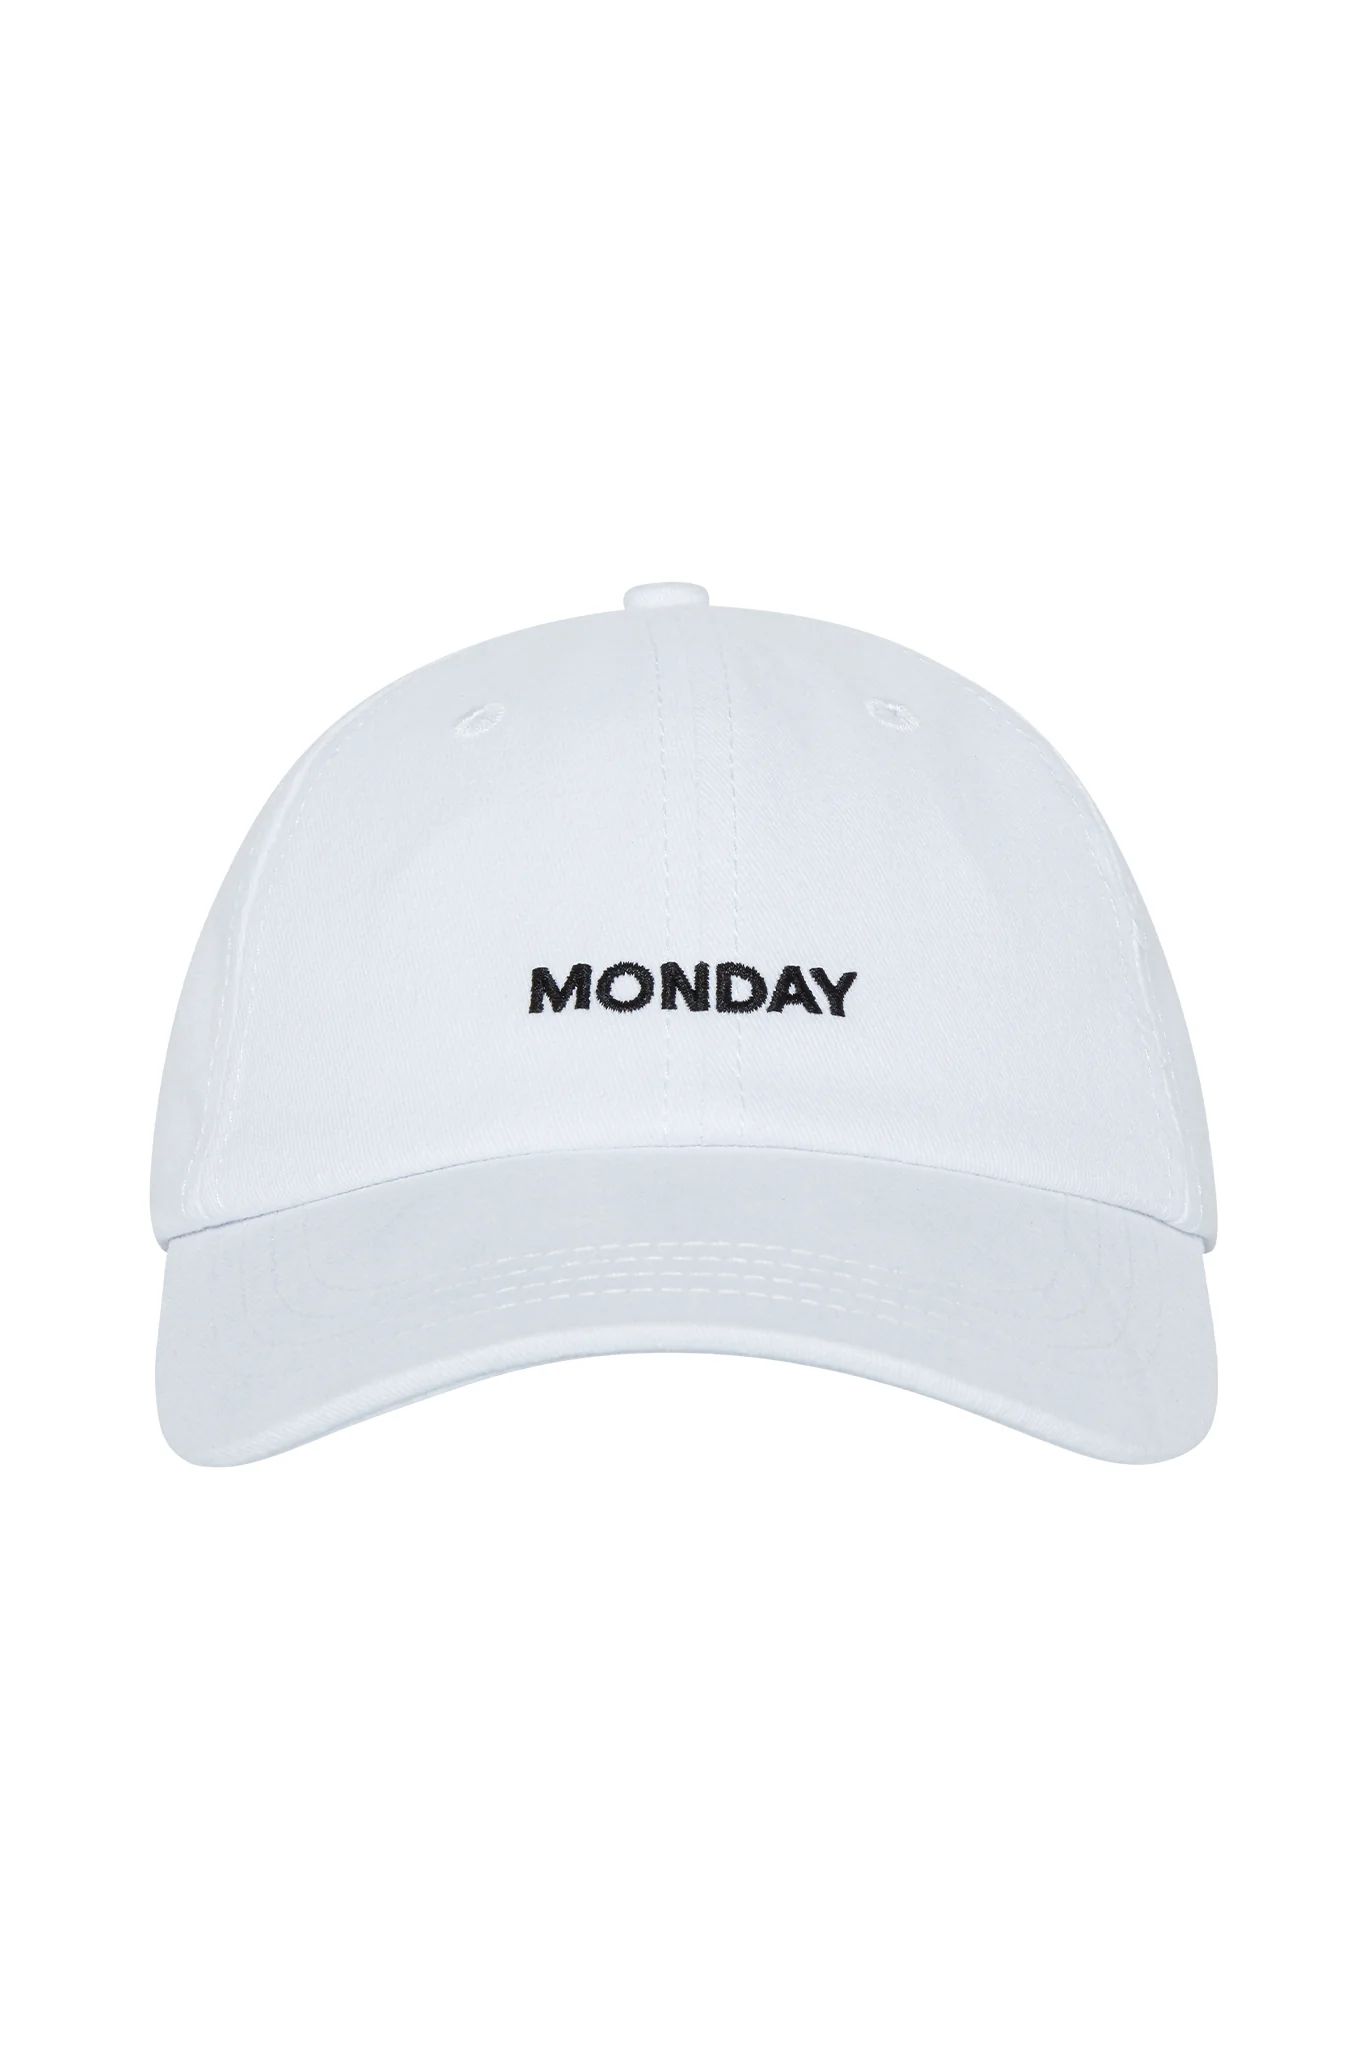 Antigua Monday Cap - White | Monday Swimwear